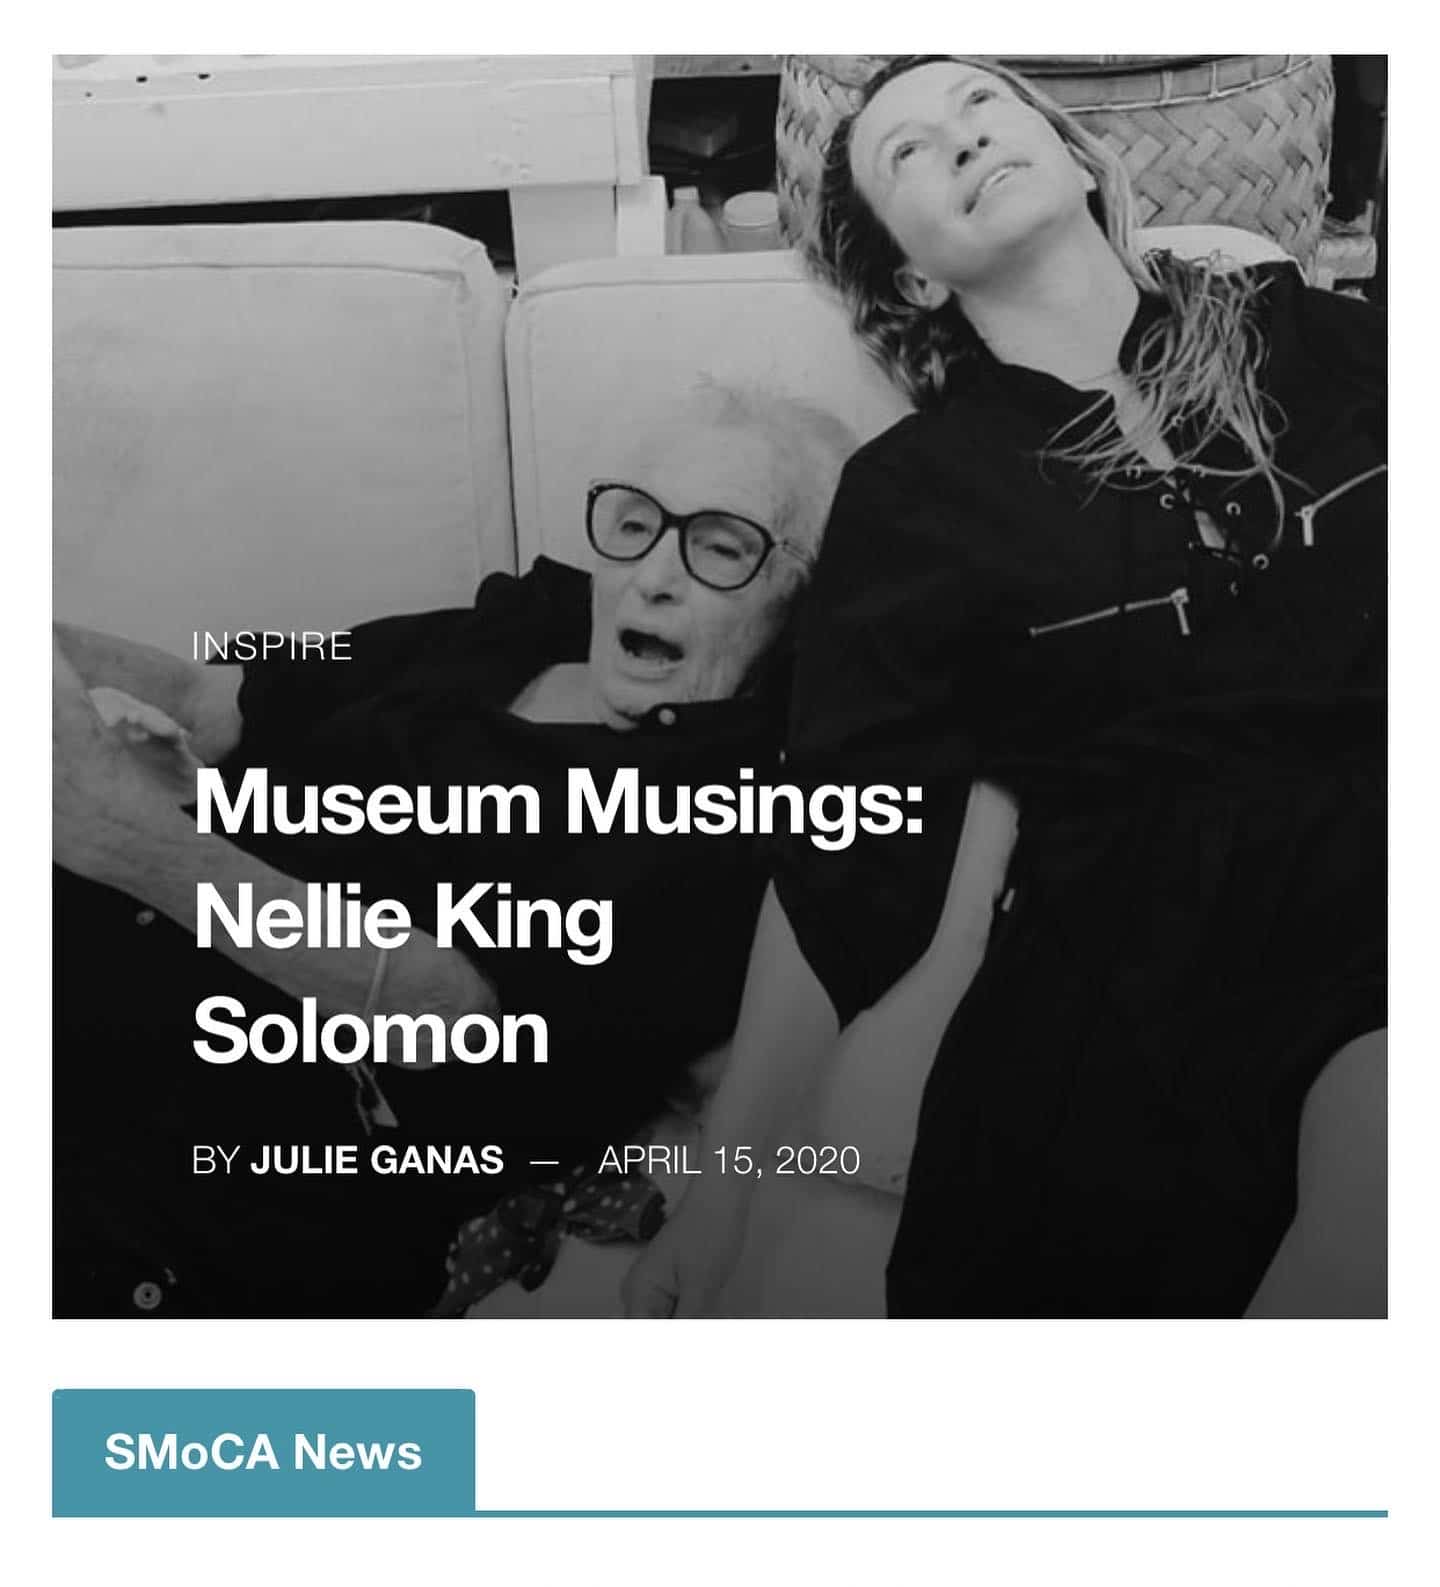 SMoCA museum musings april 2020 thumbnail